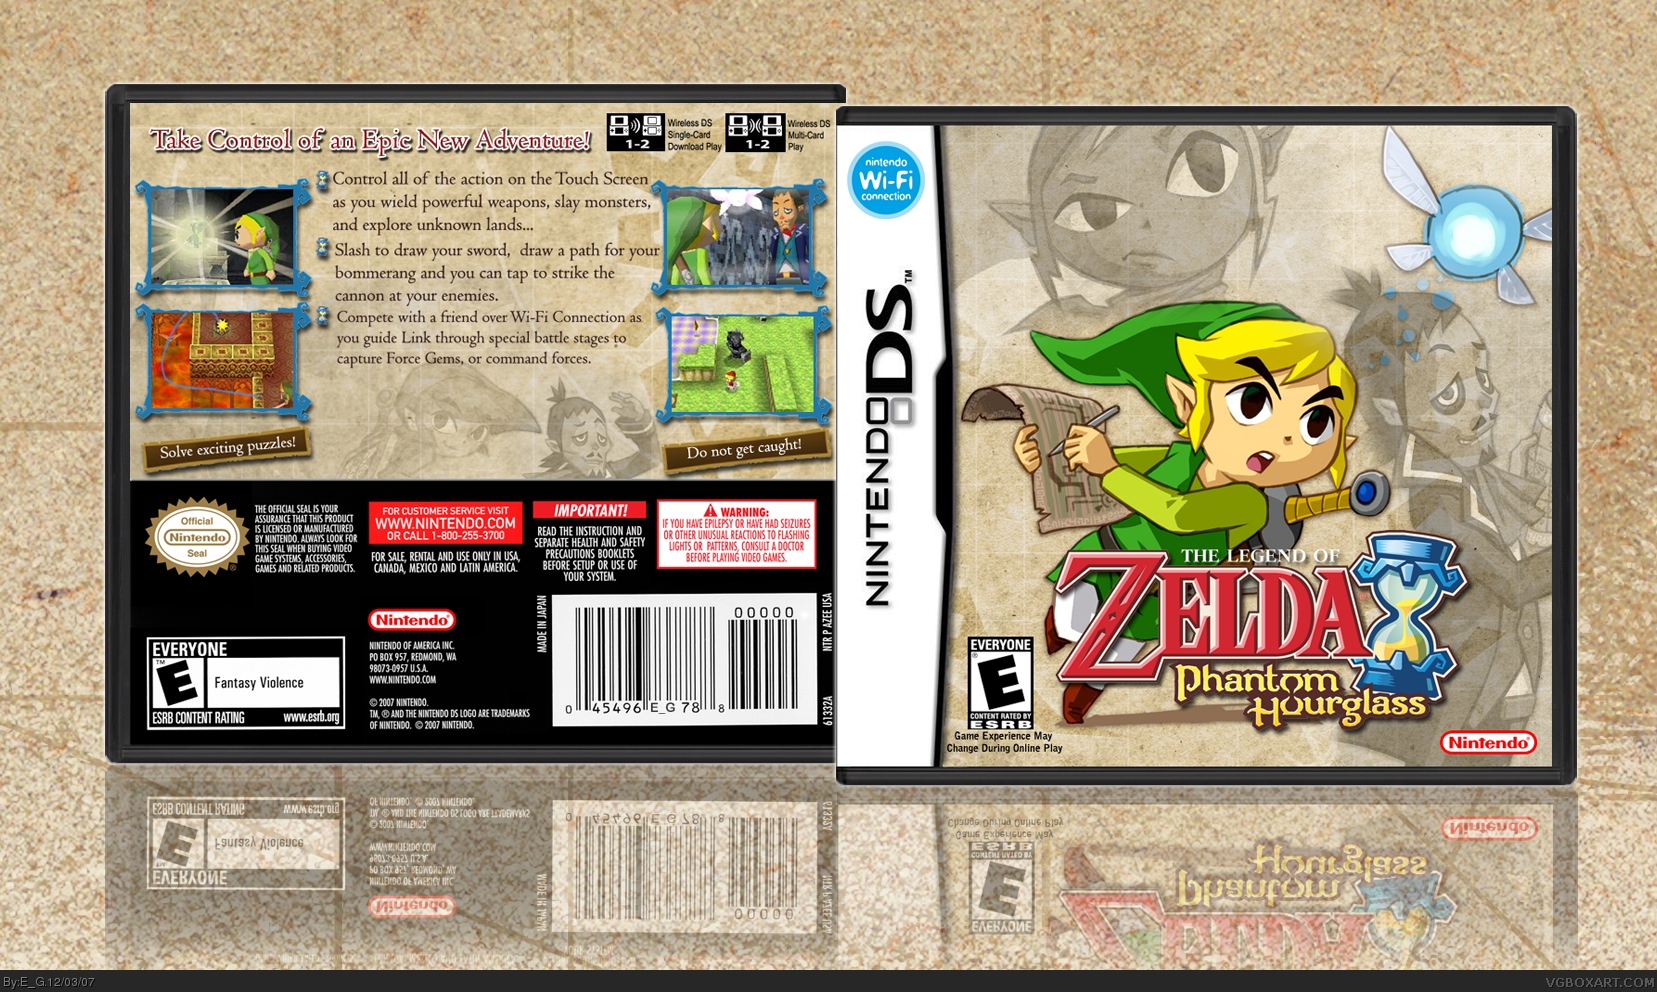 The Legend of Zelda: Phantom Hourglass box cover